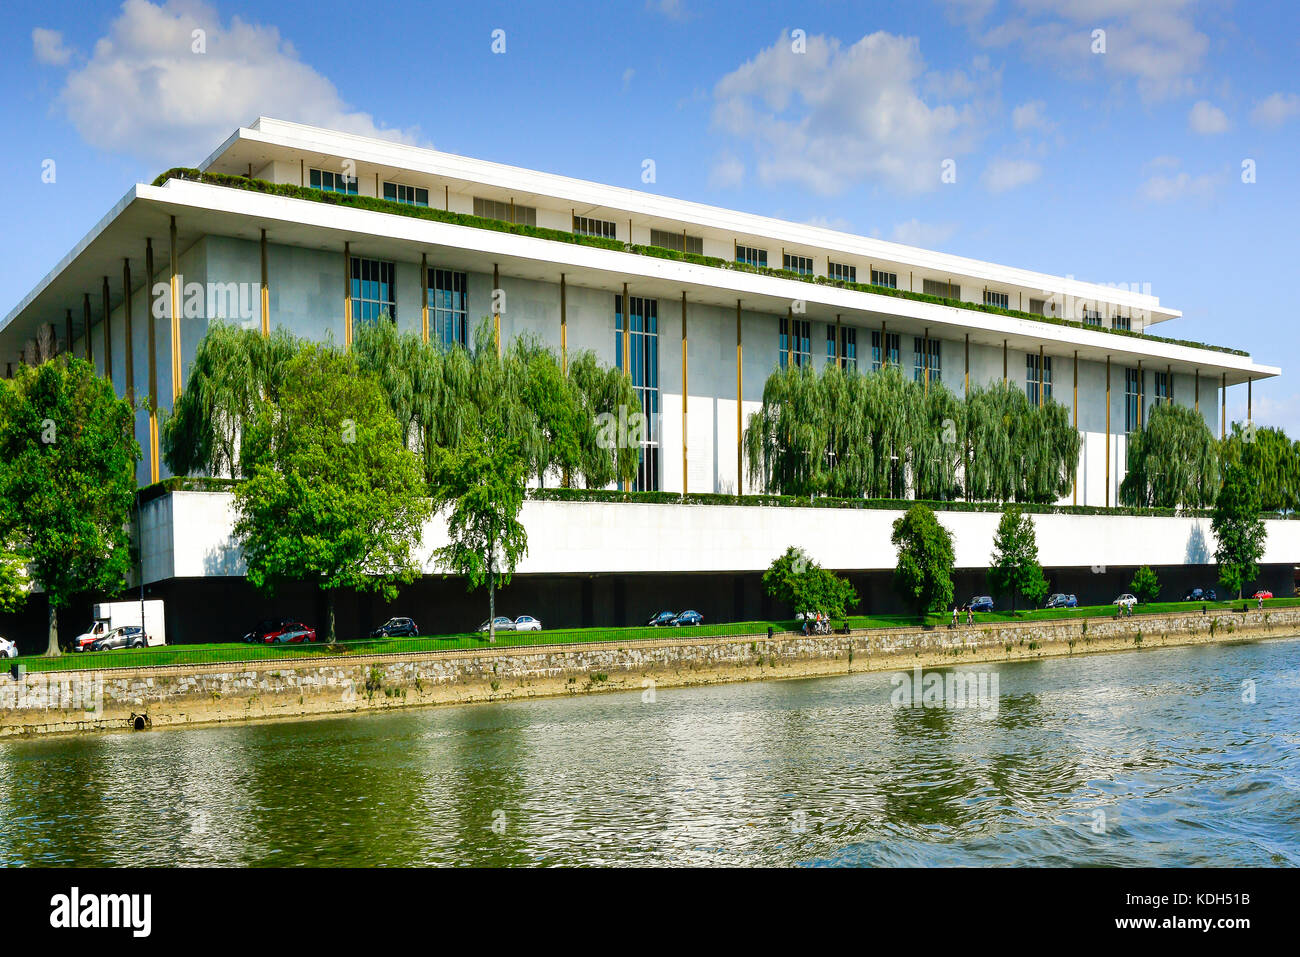 Le célèbre John F. Kennedy Center for the Performing Arts, sur les rives de la rivière Potomoc à Washington, DC, USA Banque D'Images